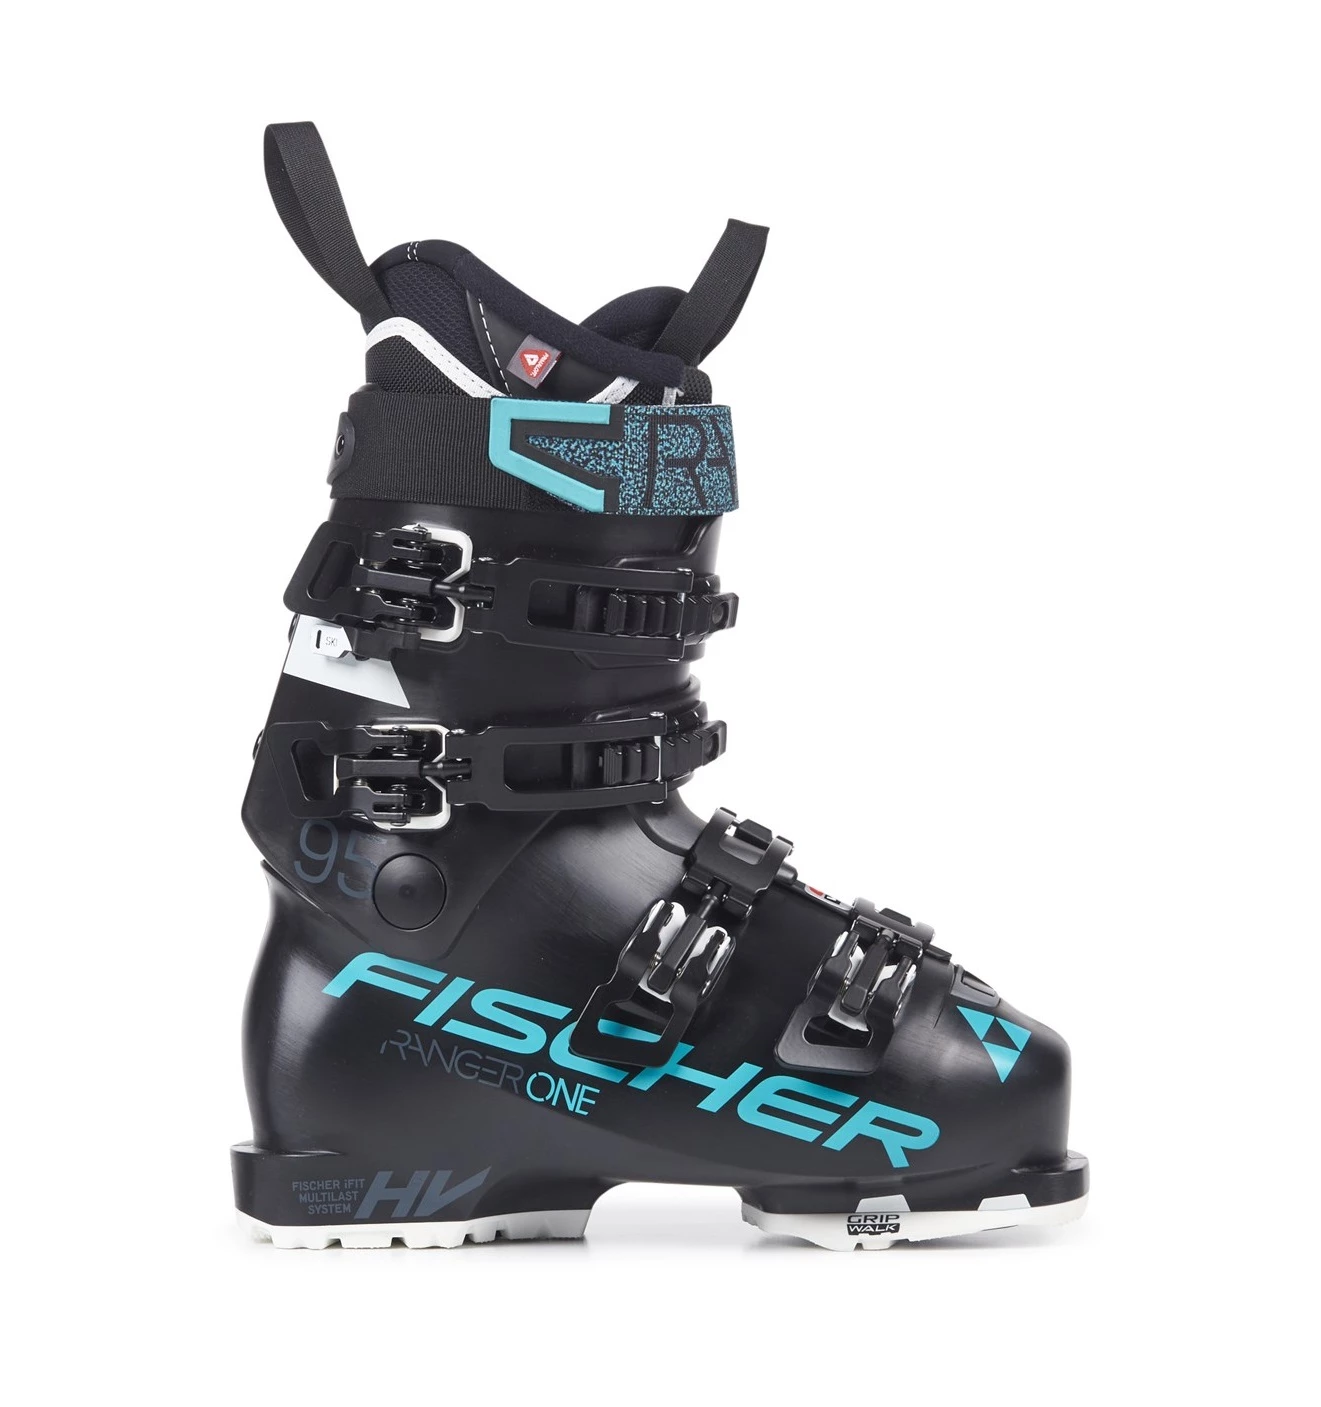 Fischer Ranger One HV 95 skischoenen dames